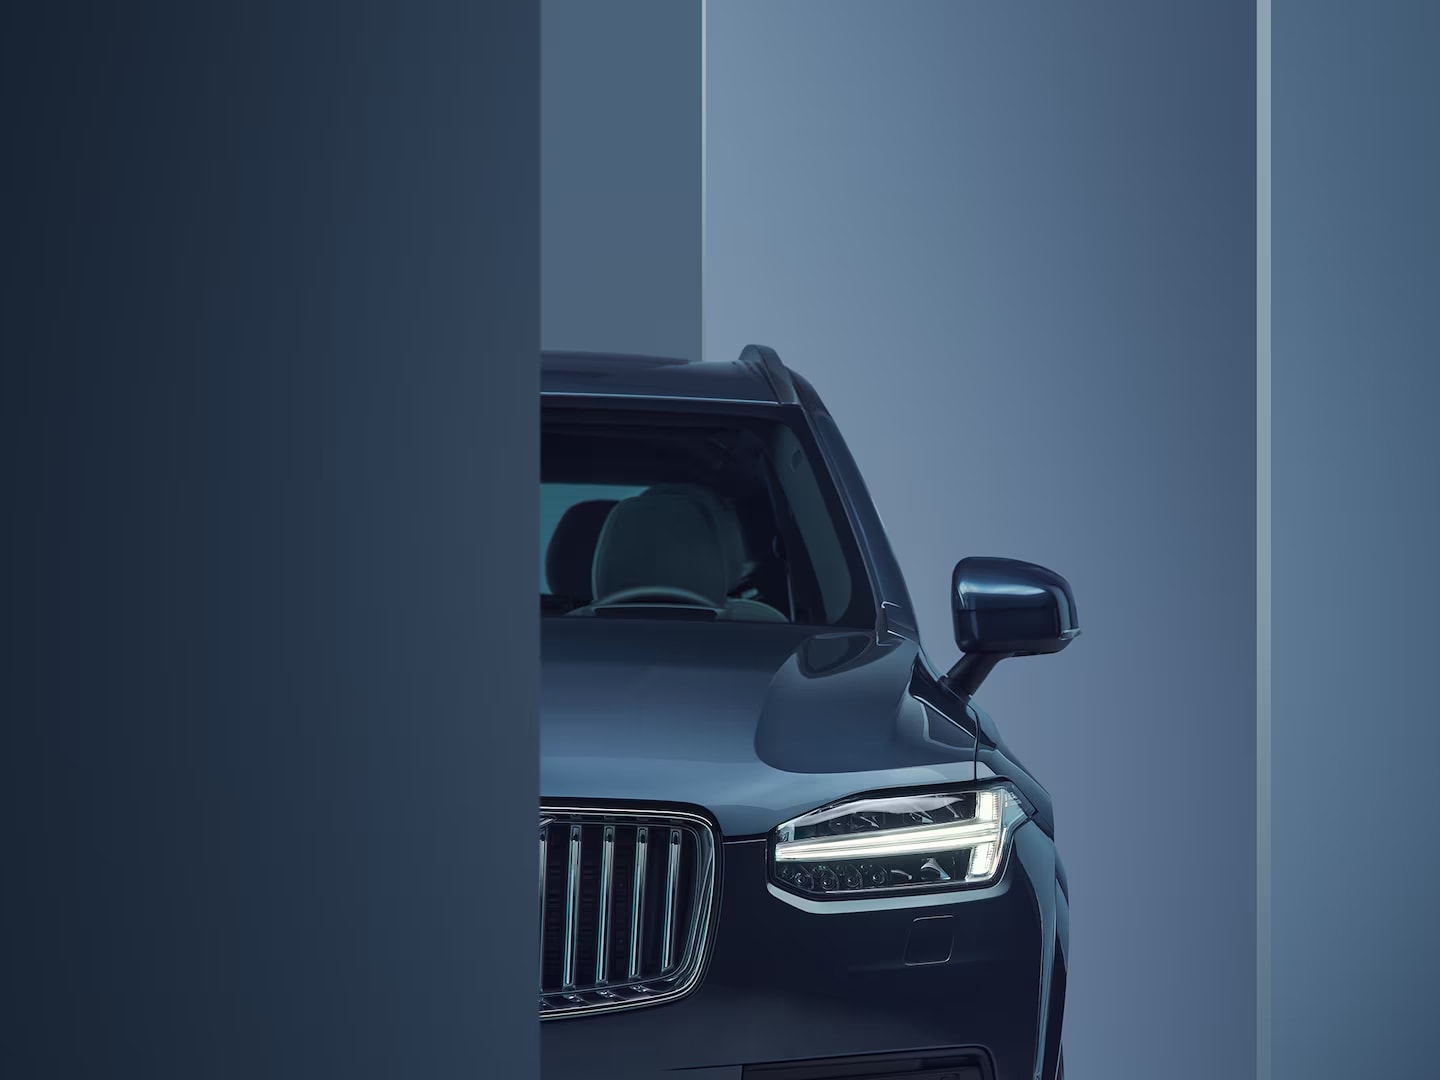 Détail du design des phares du Volvo XC90 hybride rechargeable.